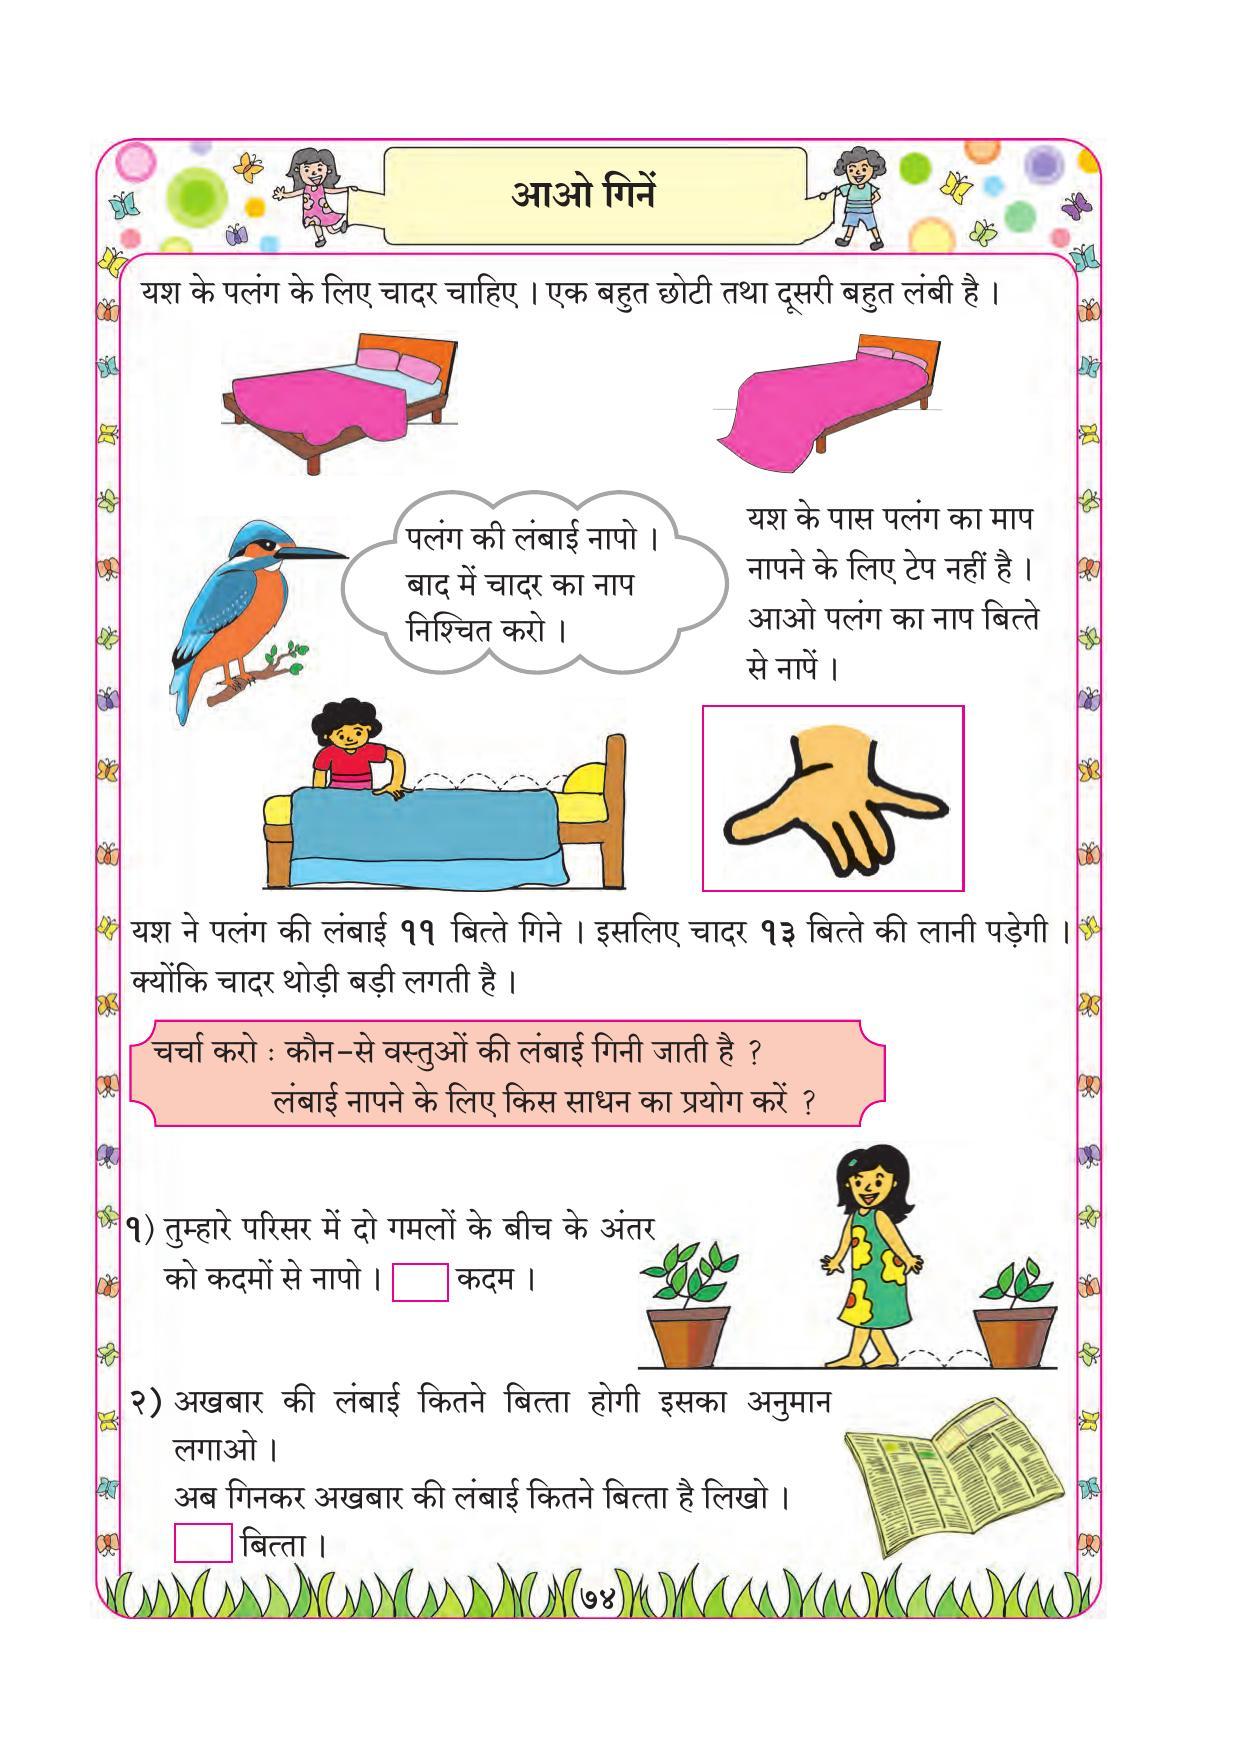 Maharashtra Board Class 1 Maths (Hindi Medium) Textbook - Page 84